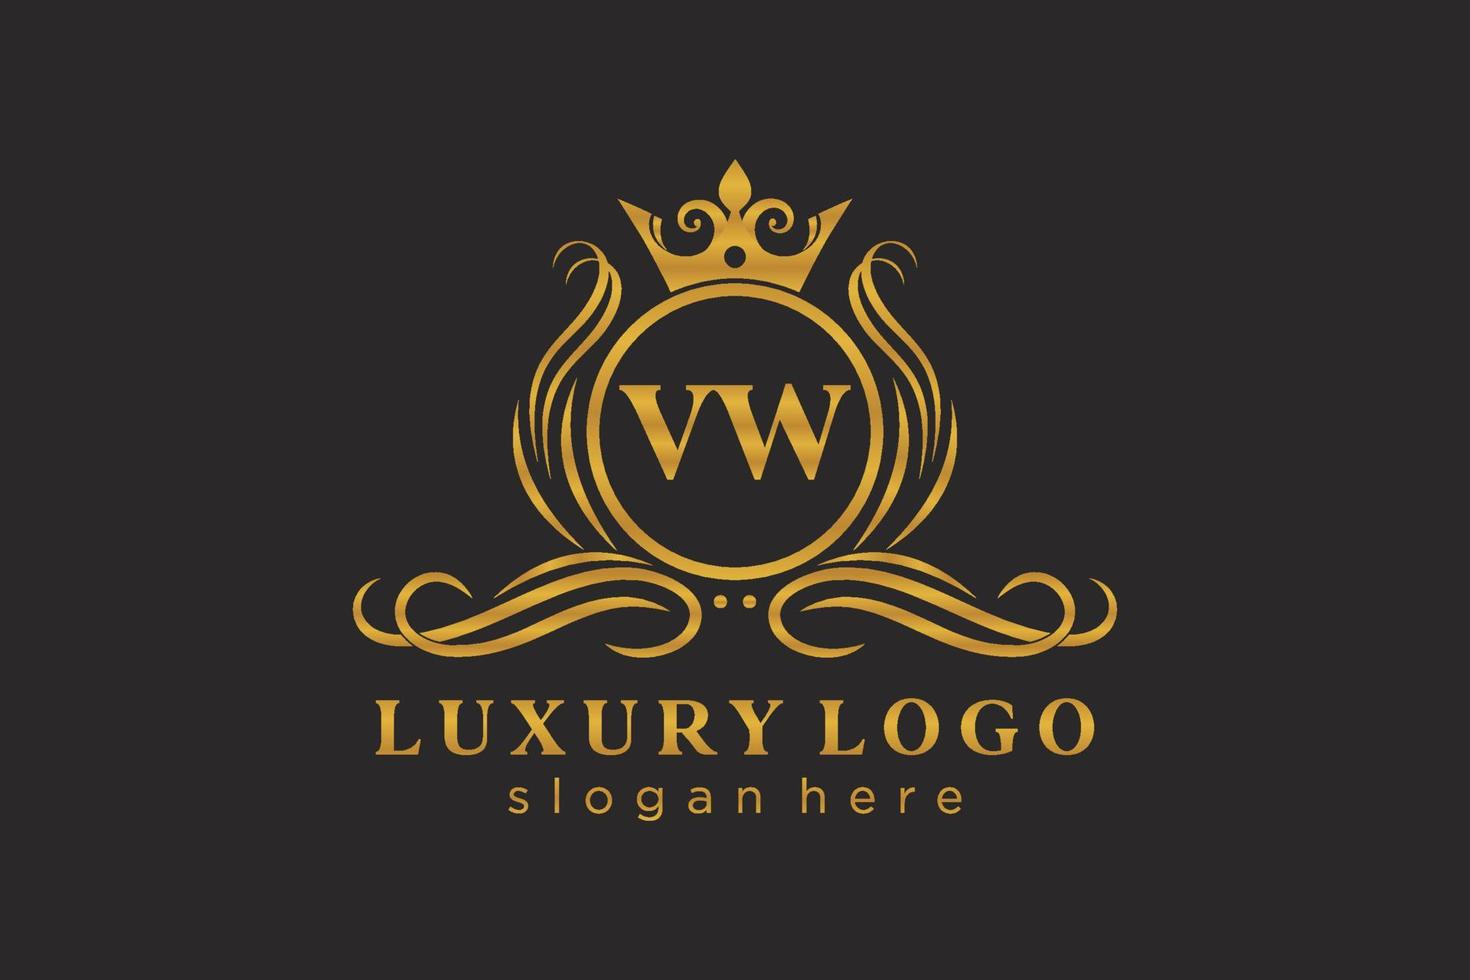 plantilla de logotipo de lujo real de letra vw inicial en arte vectorial para restaurante, realeza, boutique, cafetería, hotel, heráldica, joyería, moda y otras ilustraciones vectoriales. vector